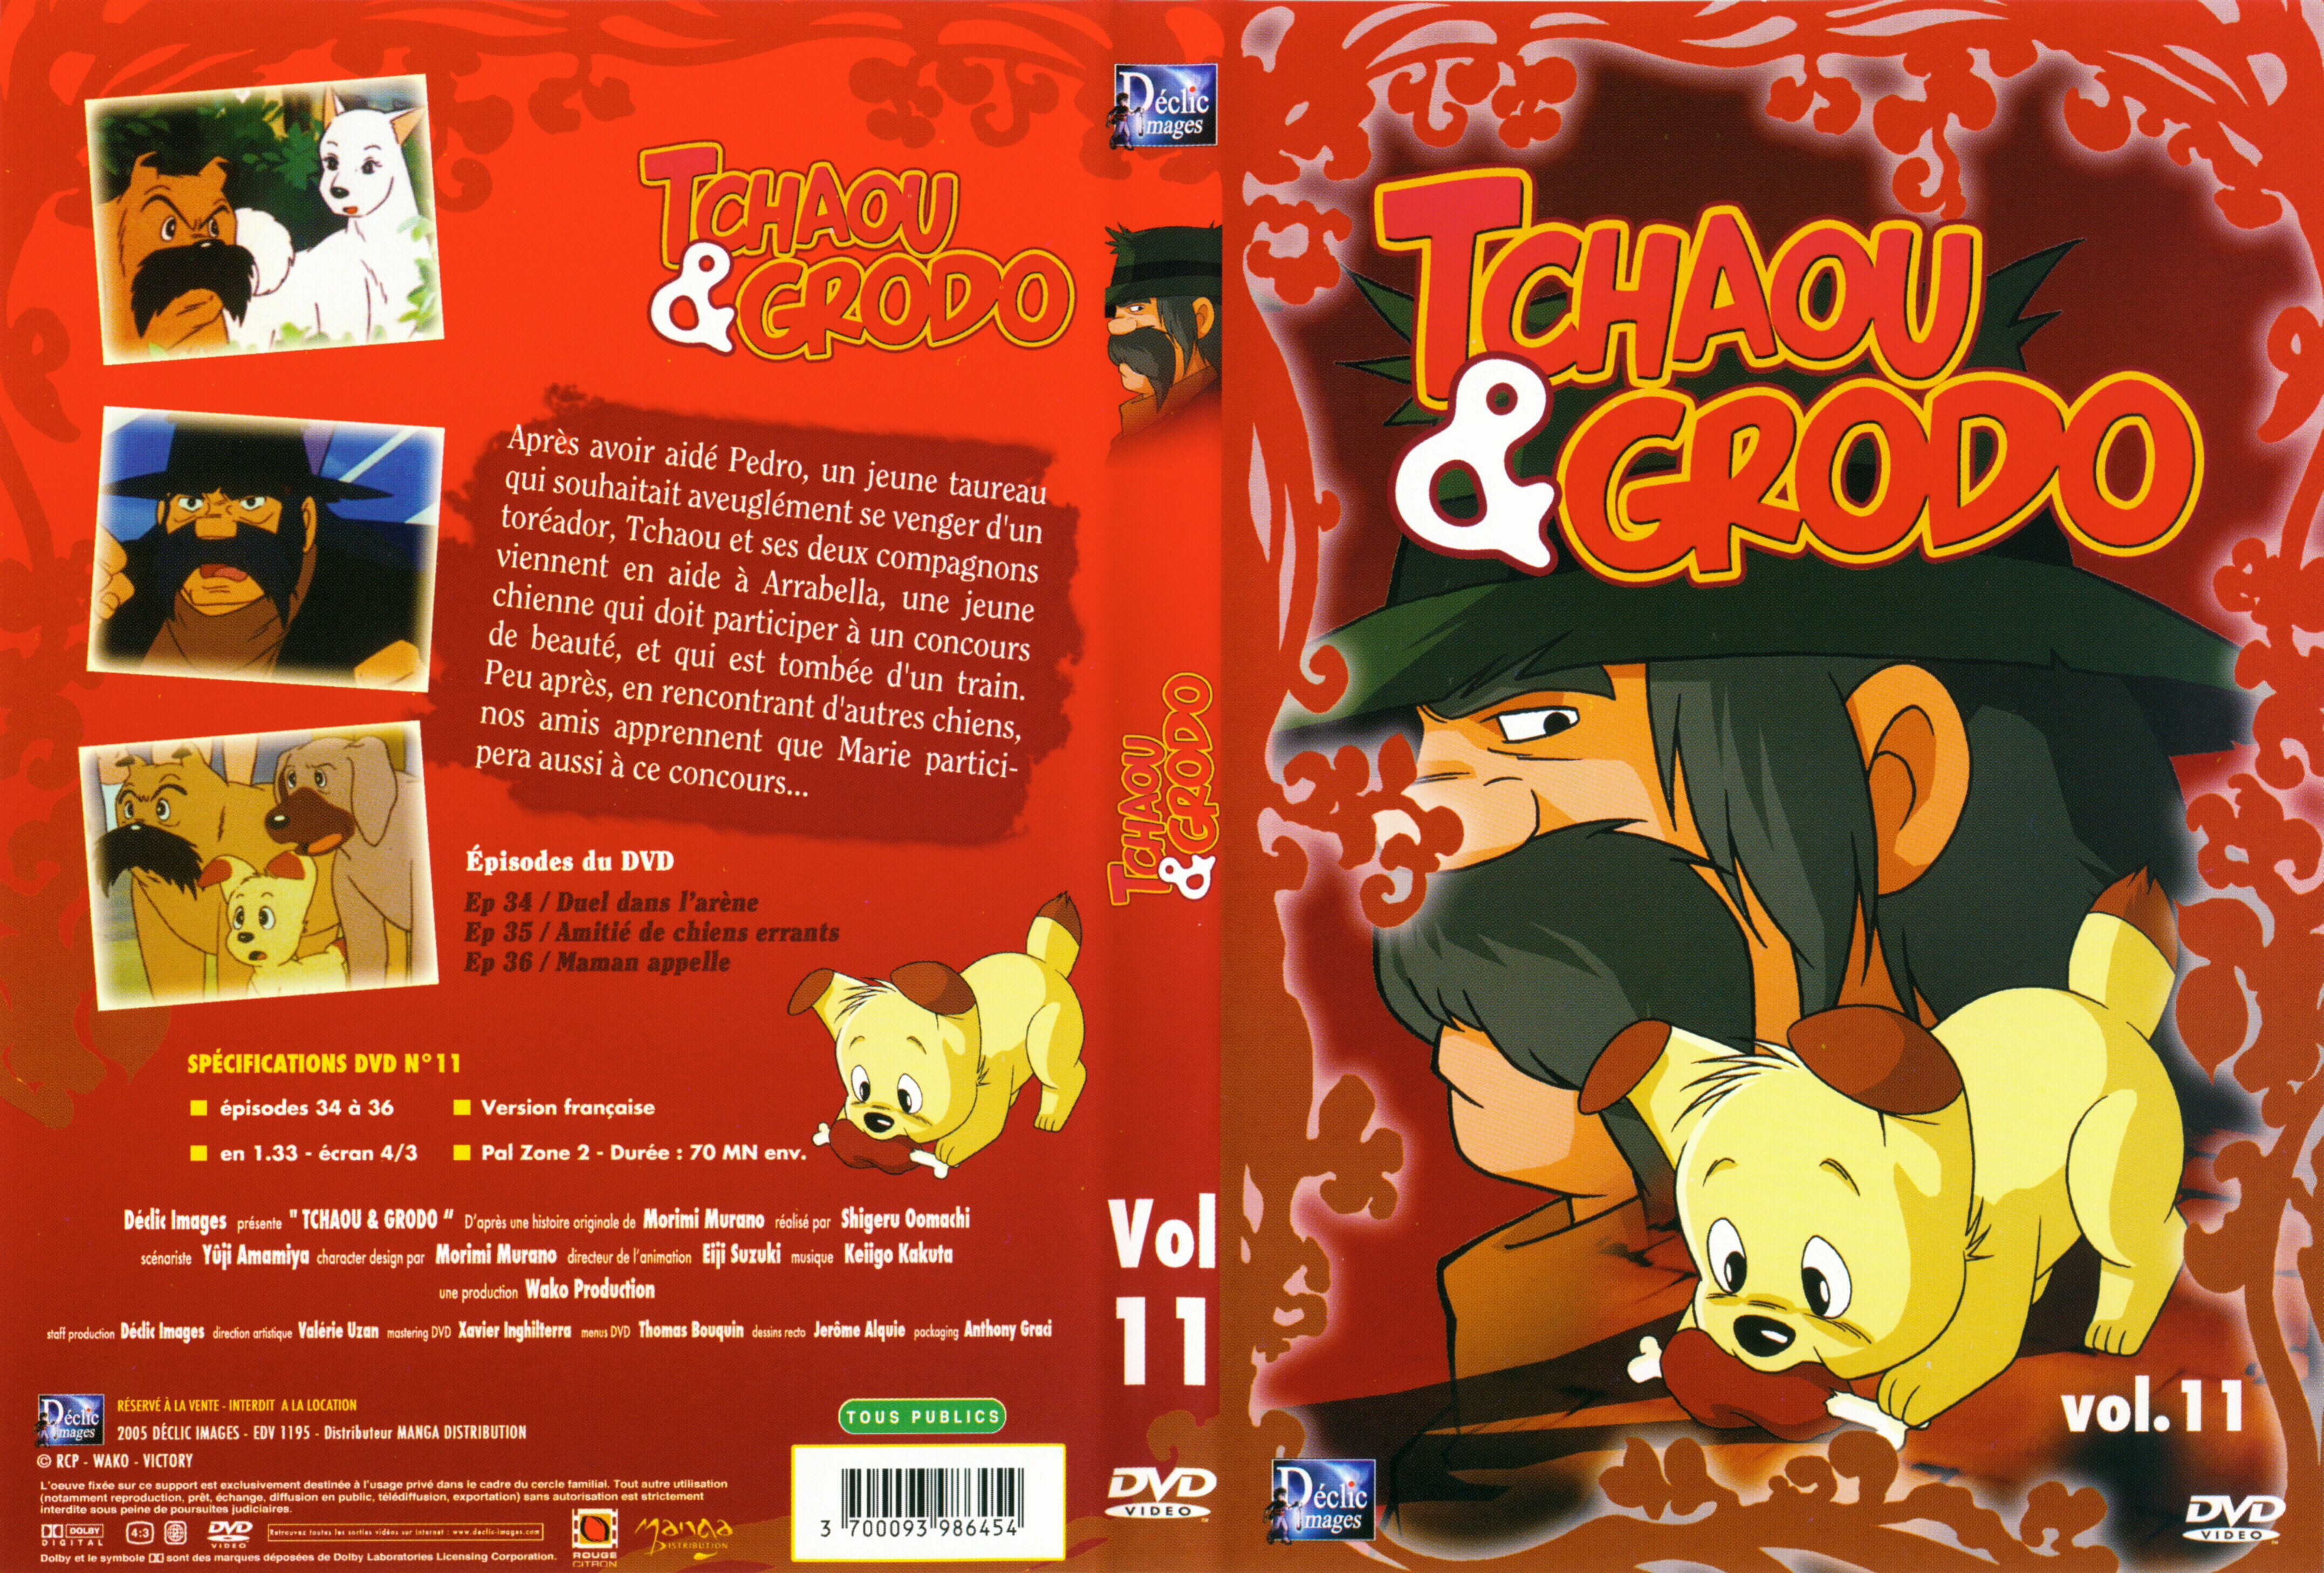 Jaquette DVD Tchaou et Grodo vol 11